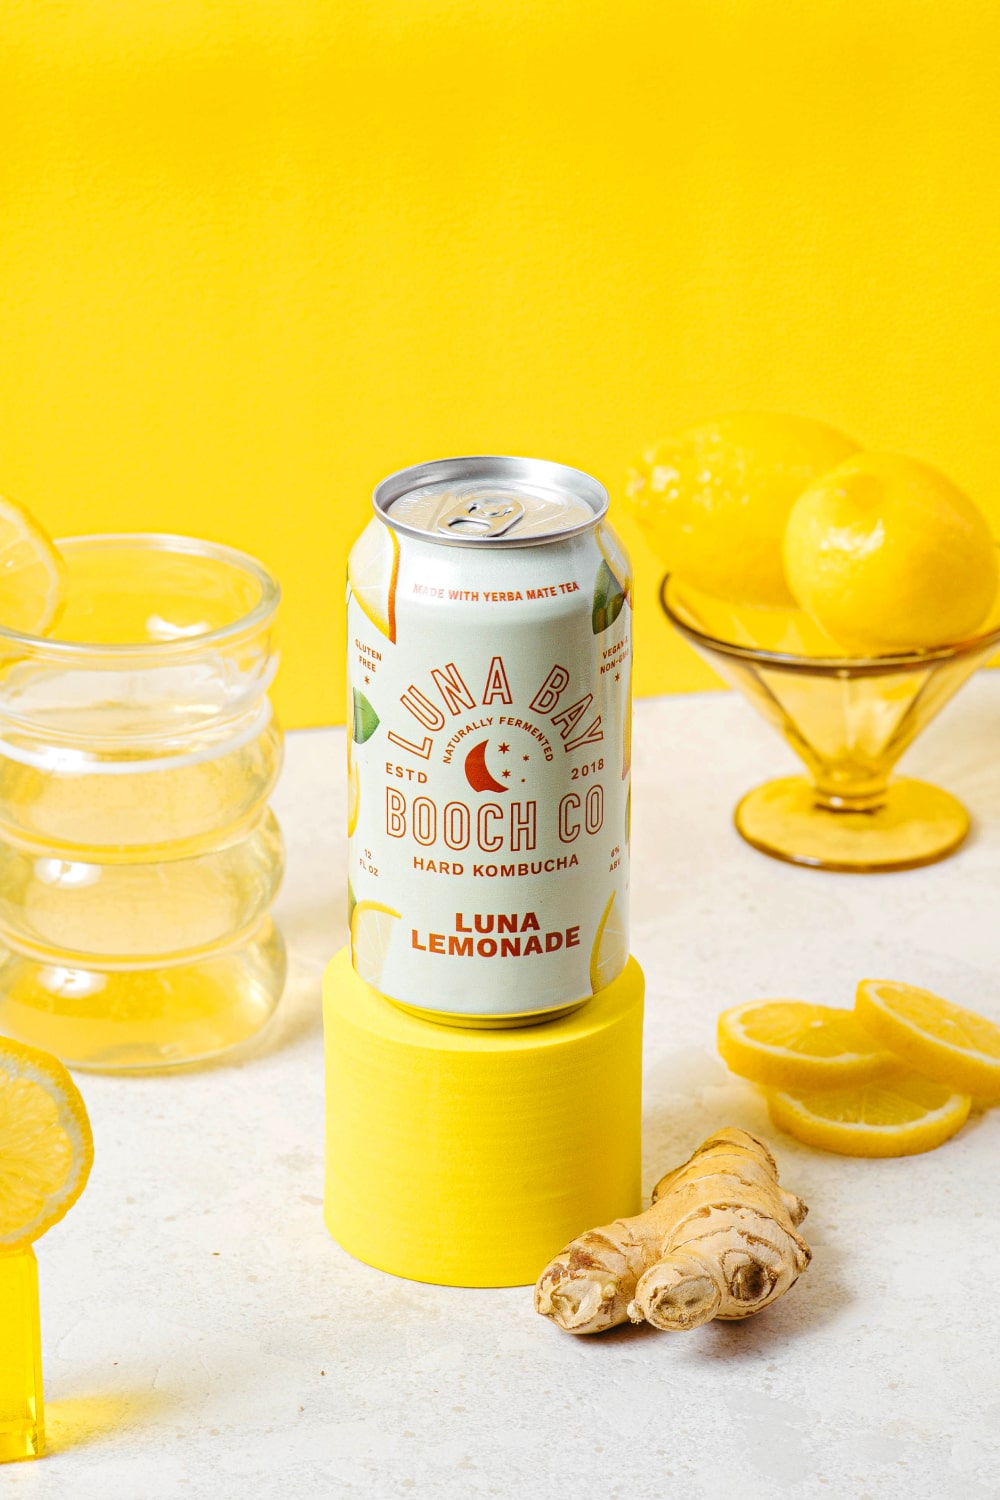 Luna Bay Lemonade